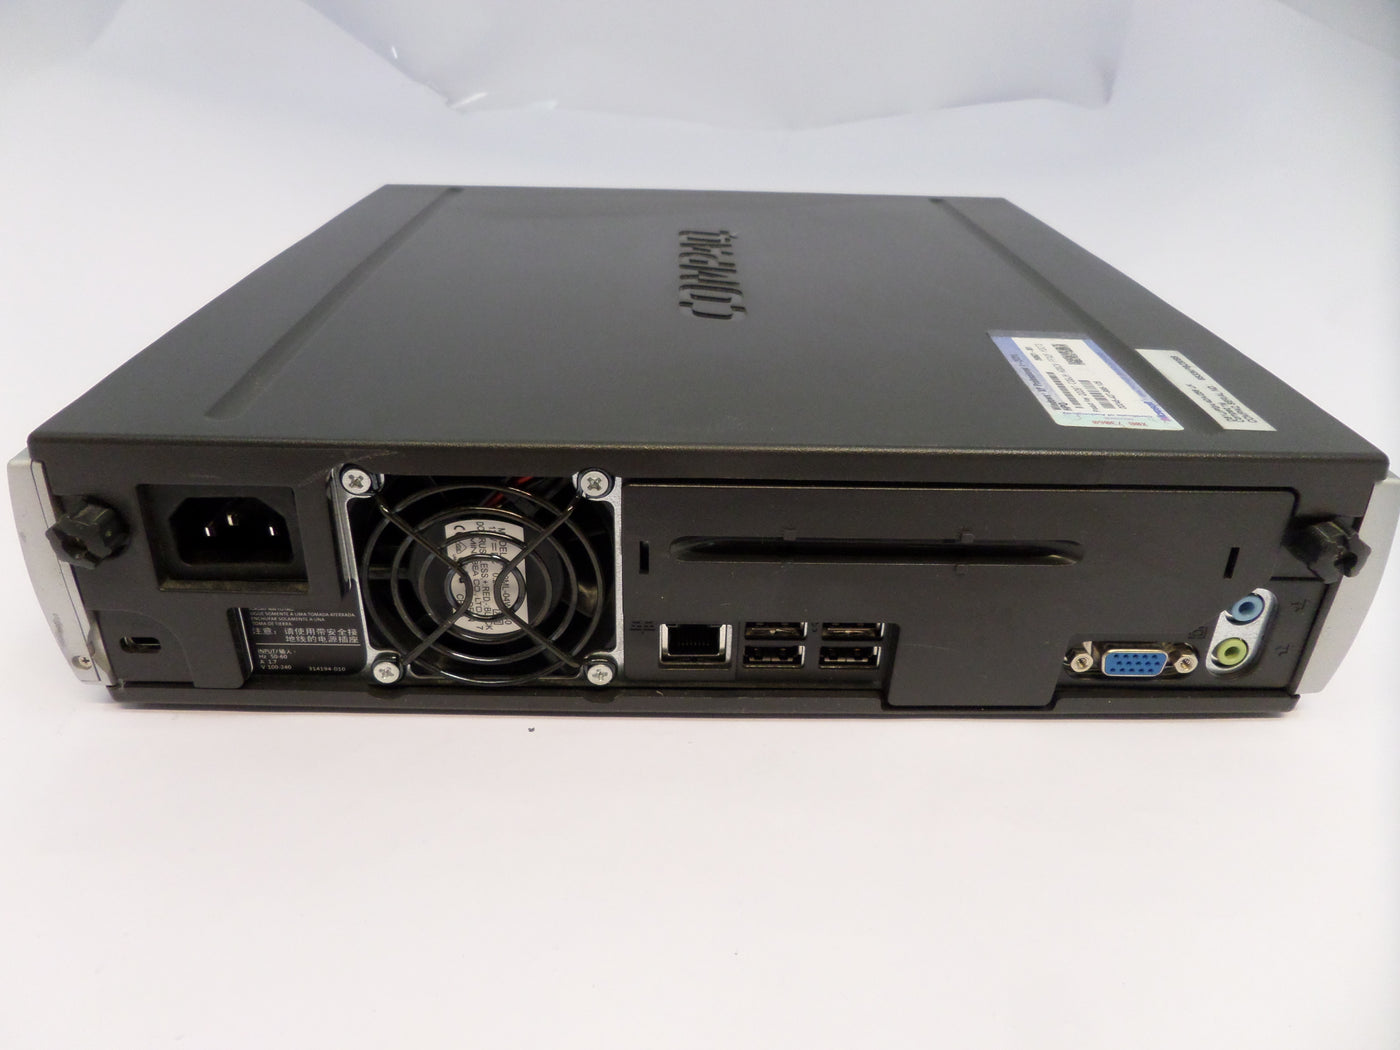 PR25944_D51U/P2A/40/K/256 UK_Compaq EVO D510 USDT Ultra Small Desktop - Image9